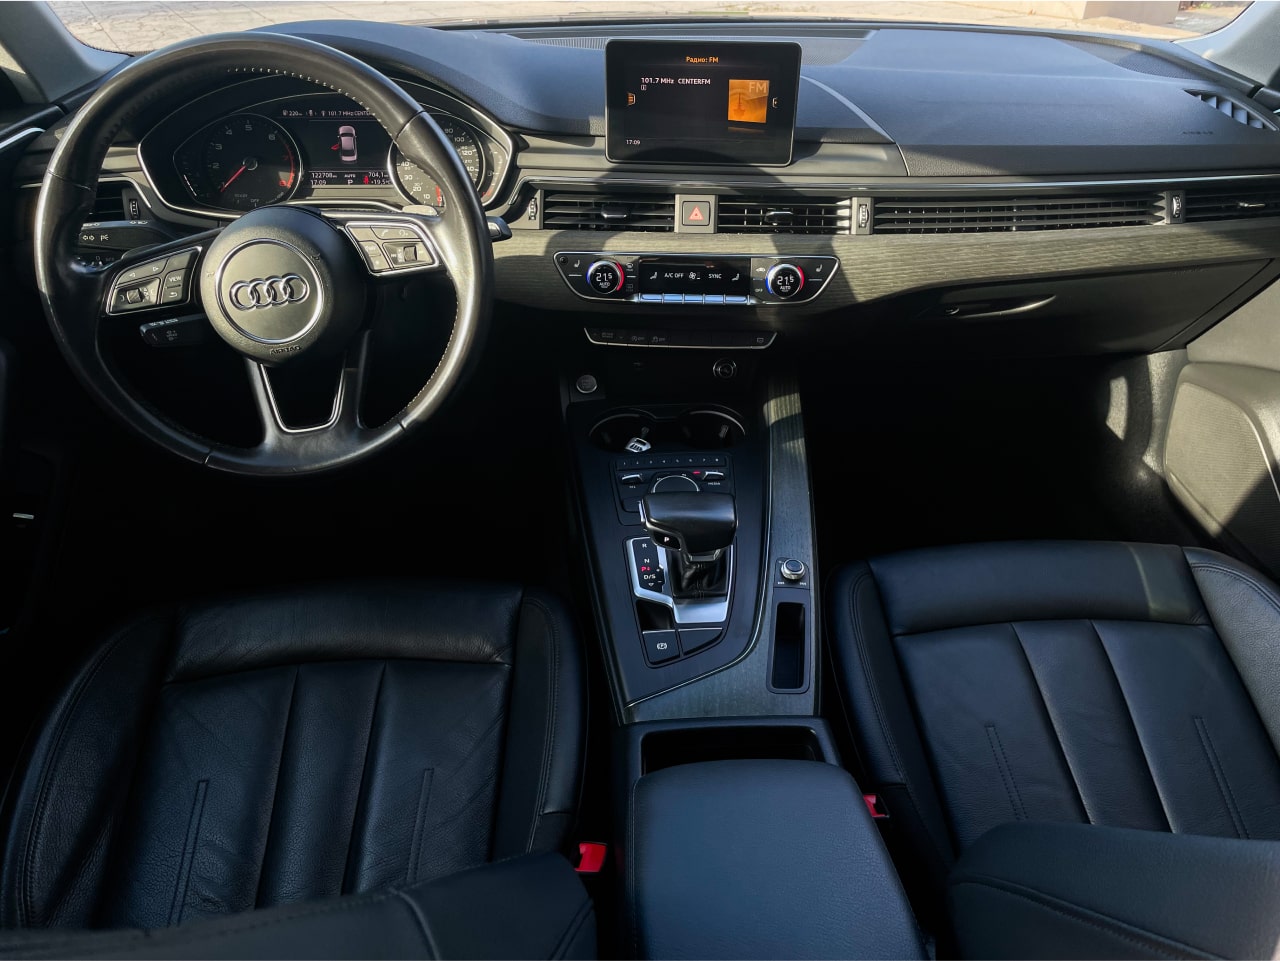 Аренда  Audi A4 B9 2.0 TSFI  2 класса 2020 года в городе Минск от 76 $/сутки,  двигатель: Бензин , объем 2.0 TSFI литров, КАСКО (Мультидрайв), без водителя, вид 6 - West Group